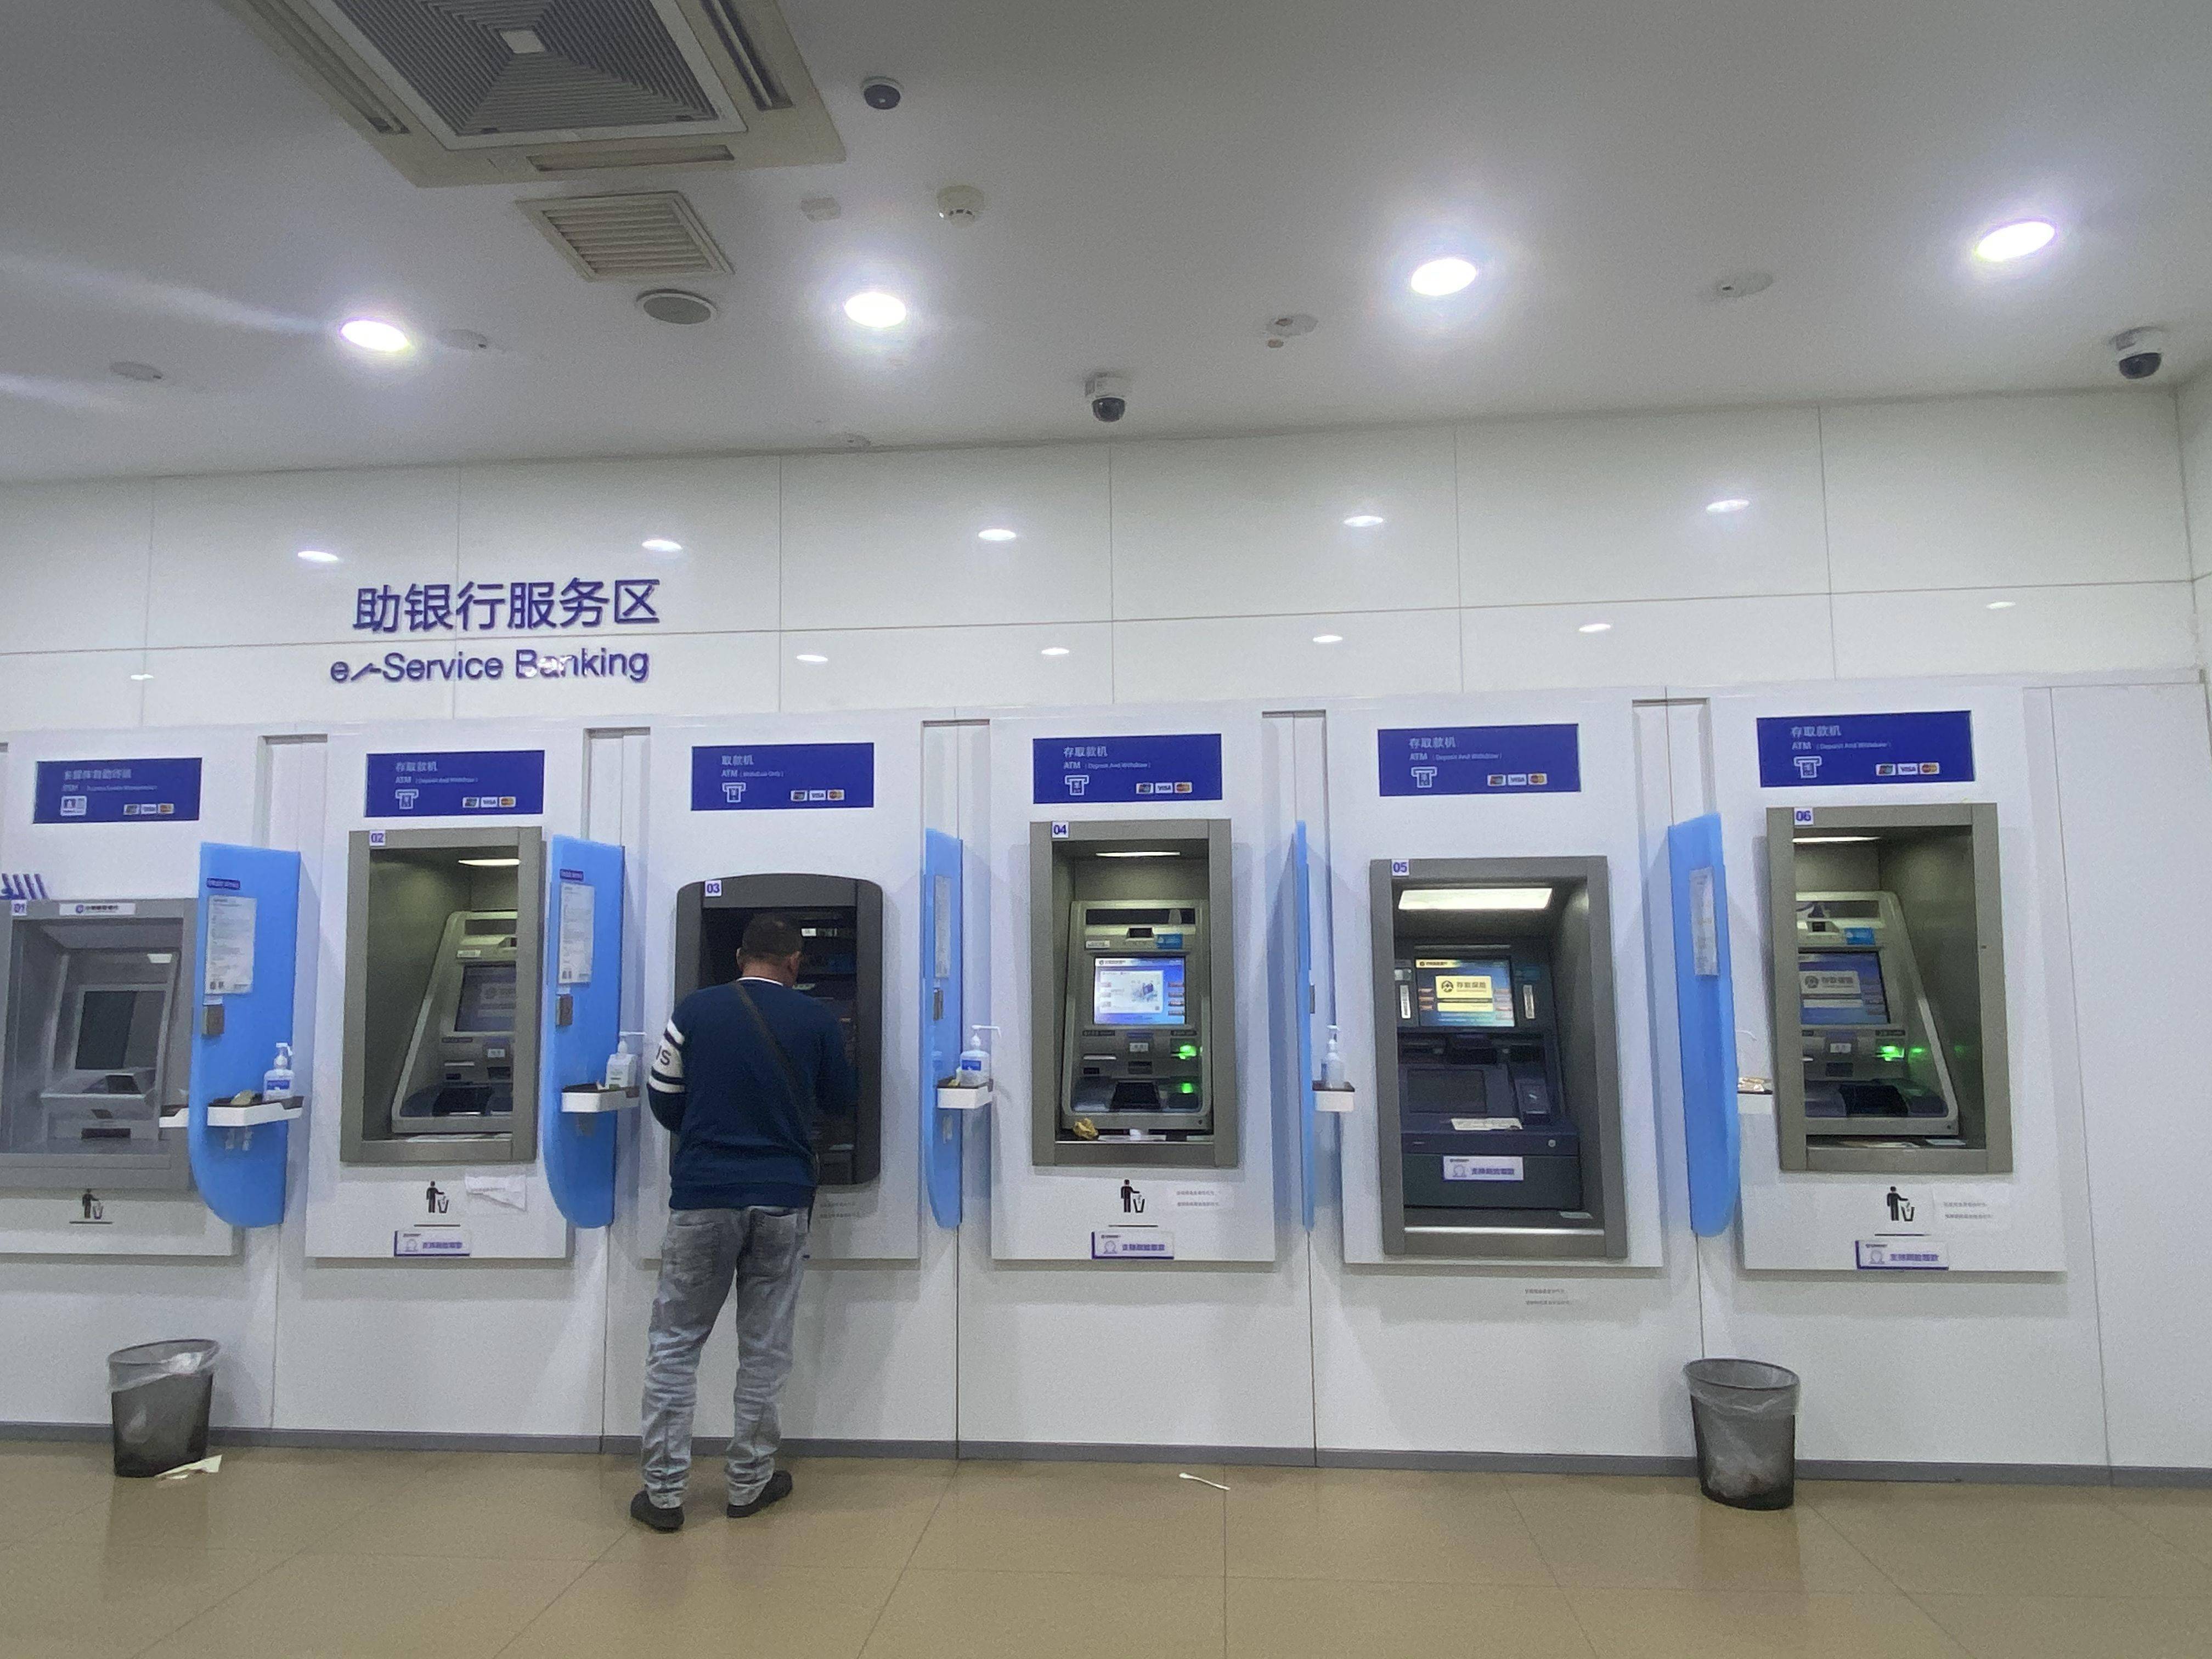 银行|失宠的ATM机售价滑铁卢 四大行近五年减超8万台 银行怎么了